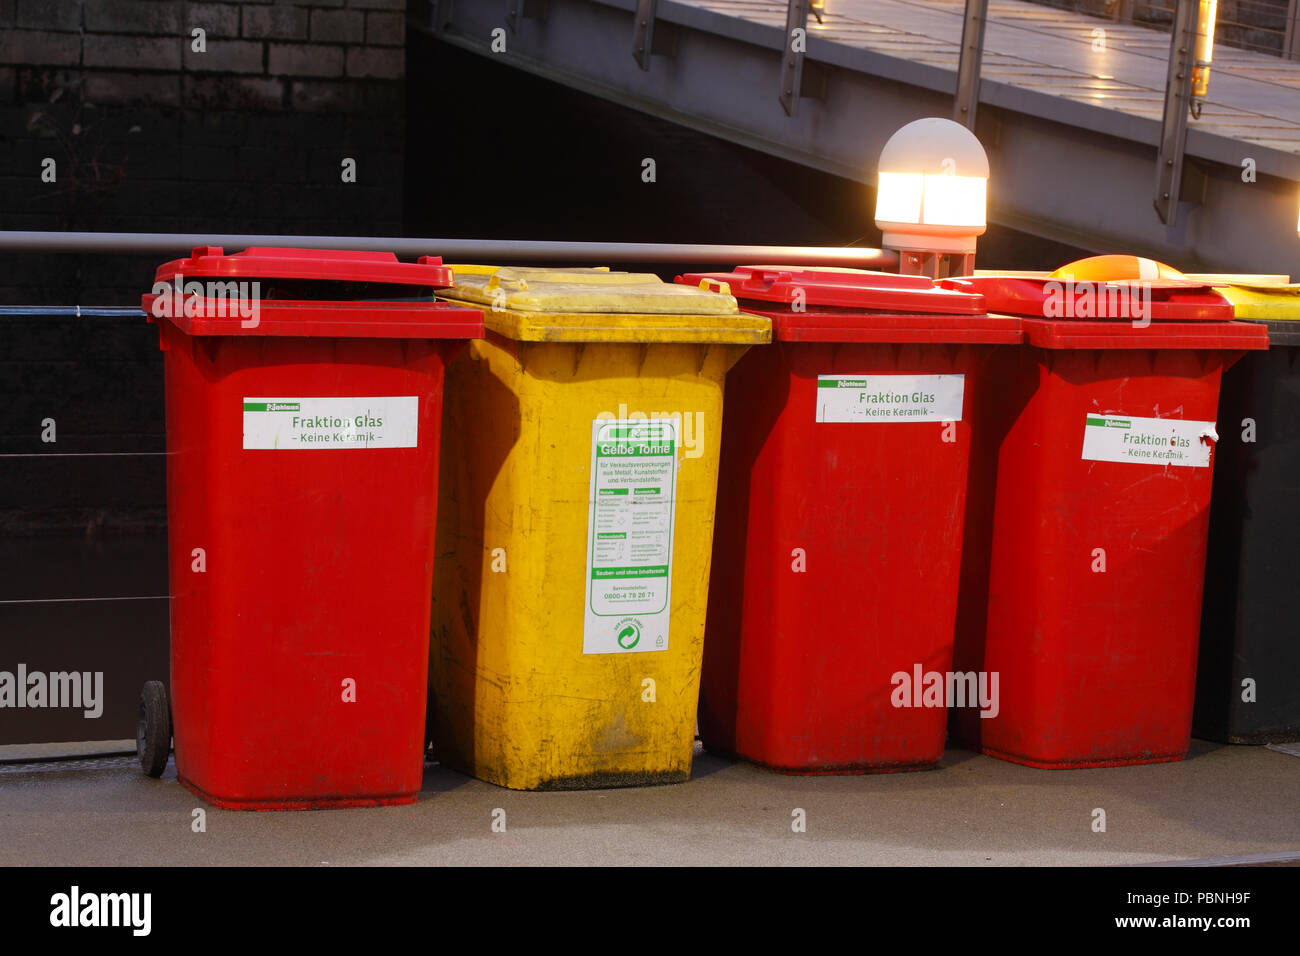 Bunte Mülltonnen, gelbe Tonne für plastik Müll, rote Tonne für Glas Müll in  der Dämmerung, Bremen, Deutschland, Europa ich Bunte Mülltonnen, Gelbe  Tonne f Stockfotografie - Alamy